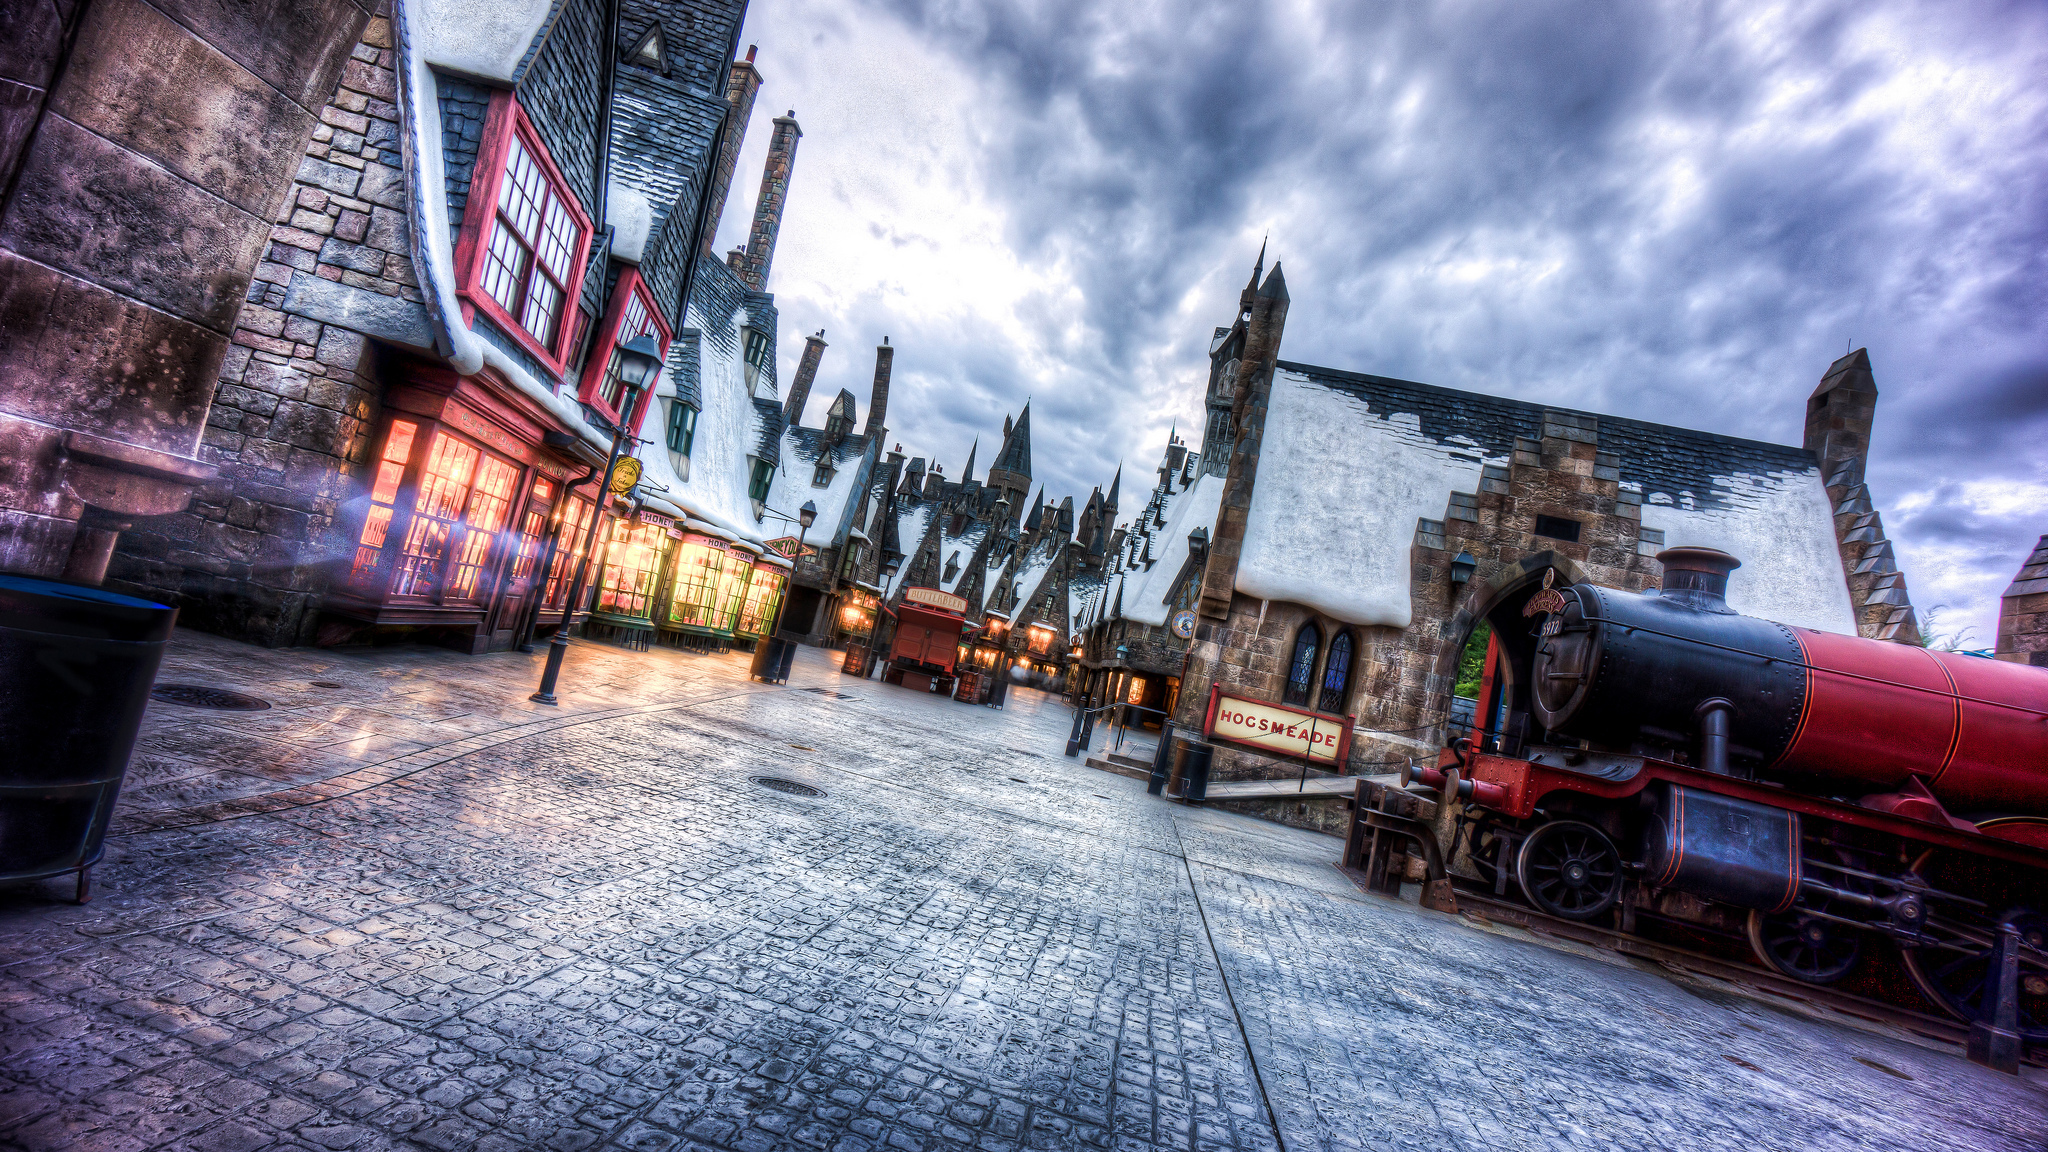 壁紙 冬 空 ハリー ポッター 住宅 Universal Studios Wizarding World Of Harry Potter ストリート フロリダ州 映画 都市 ダウンロード 写真